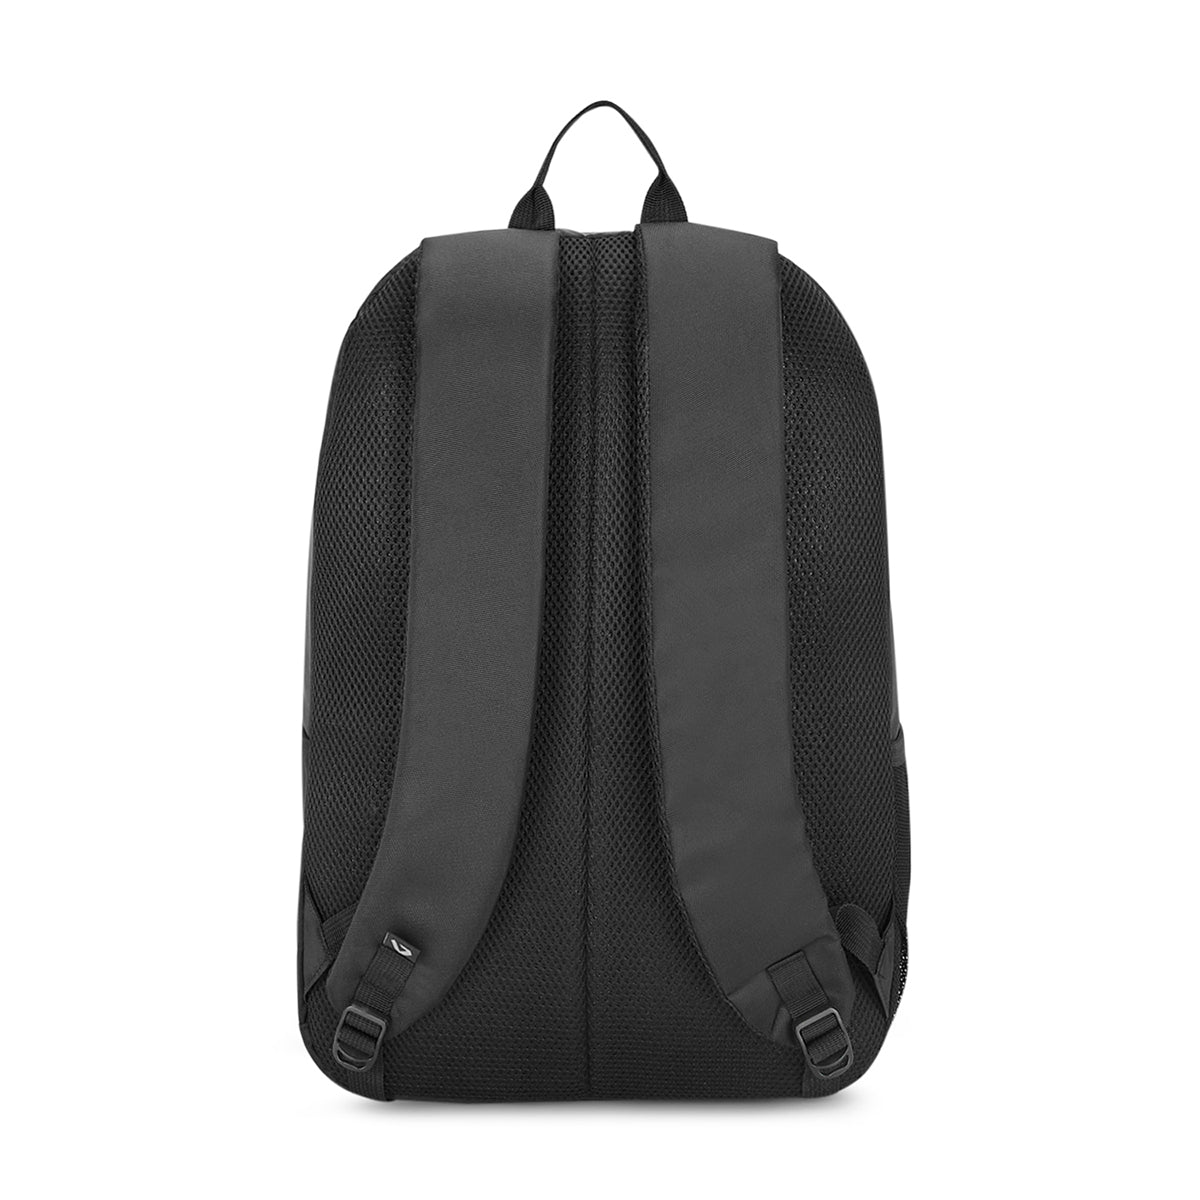 The Vertical Kenneth Backpack Black